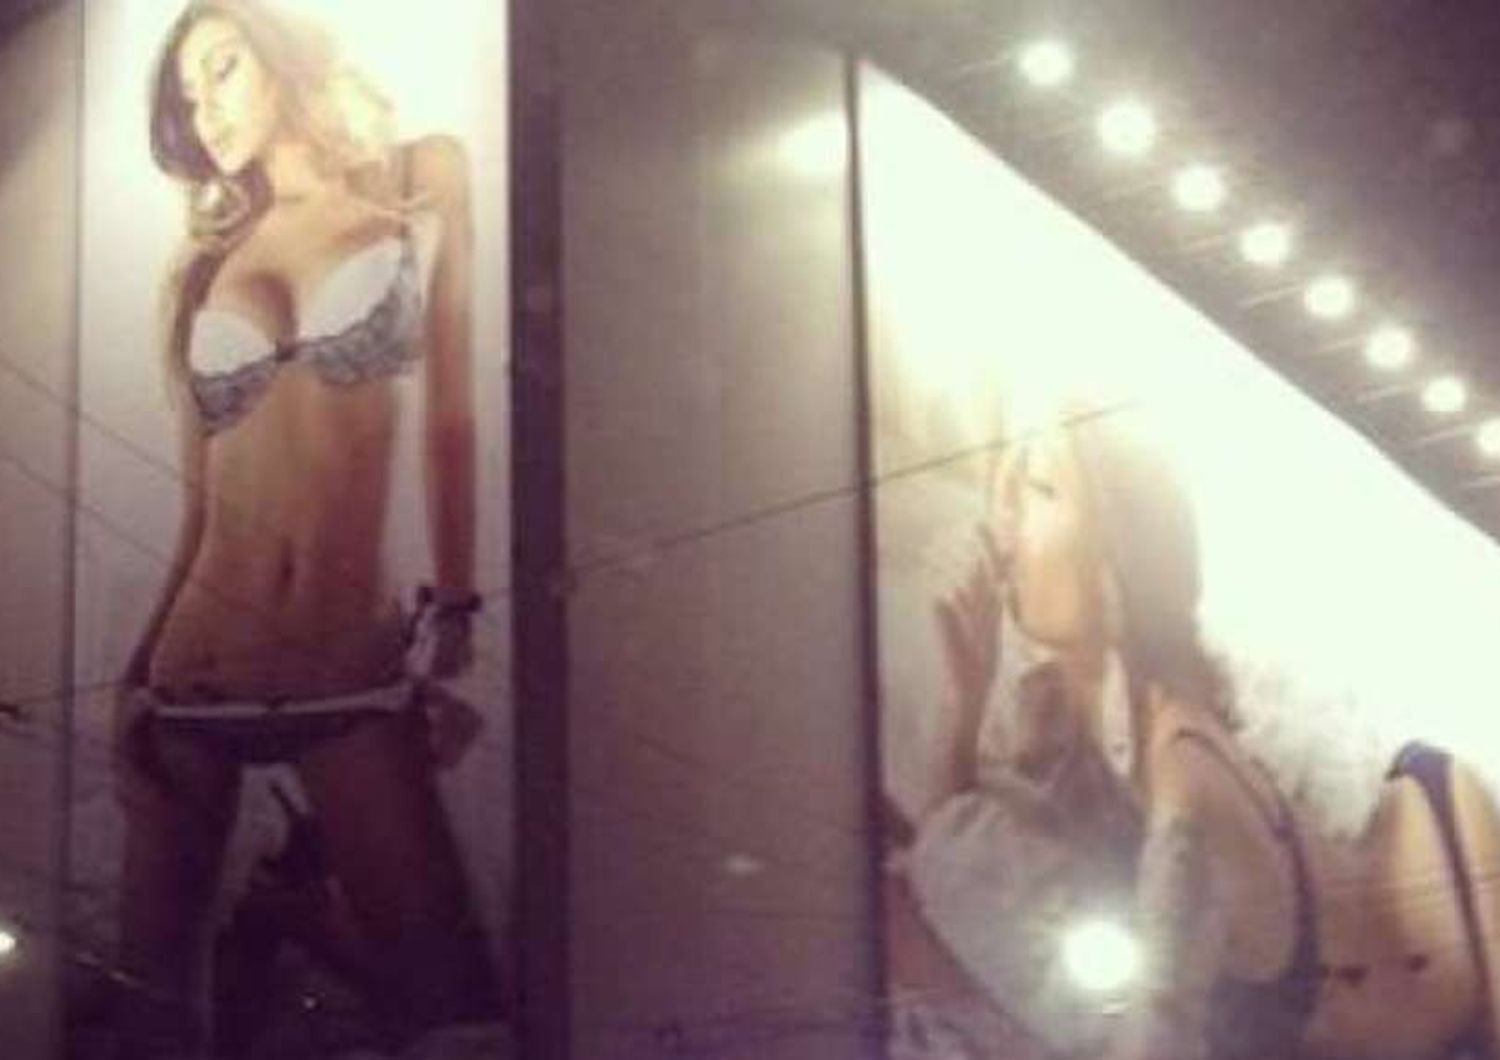 Maxi cartellone con Belen a Milano: vigili, "troppo sexy, da rimuovere"